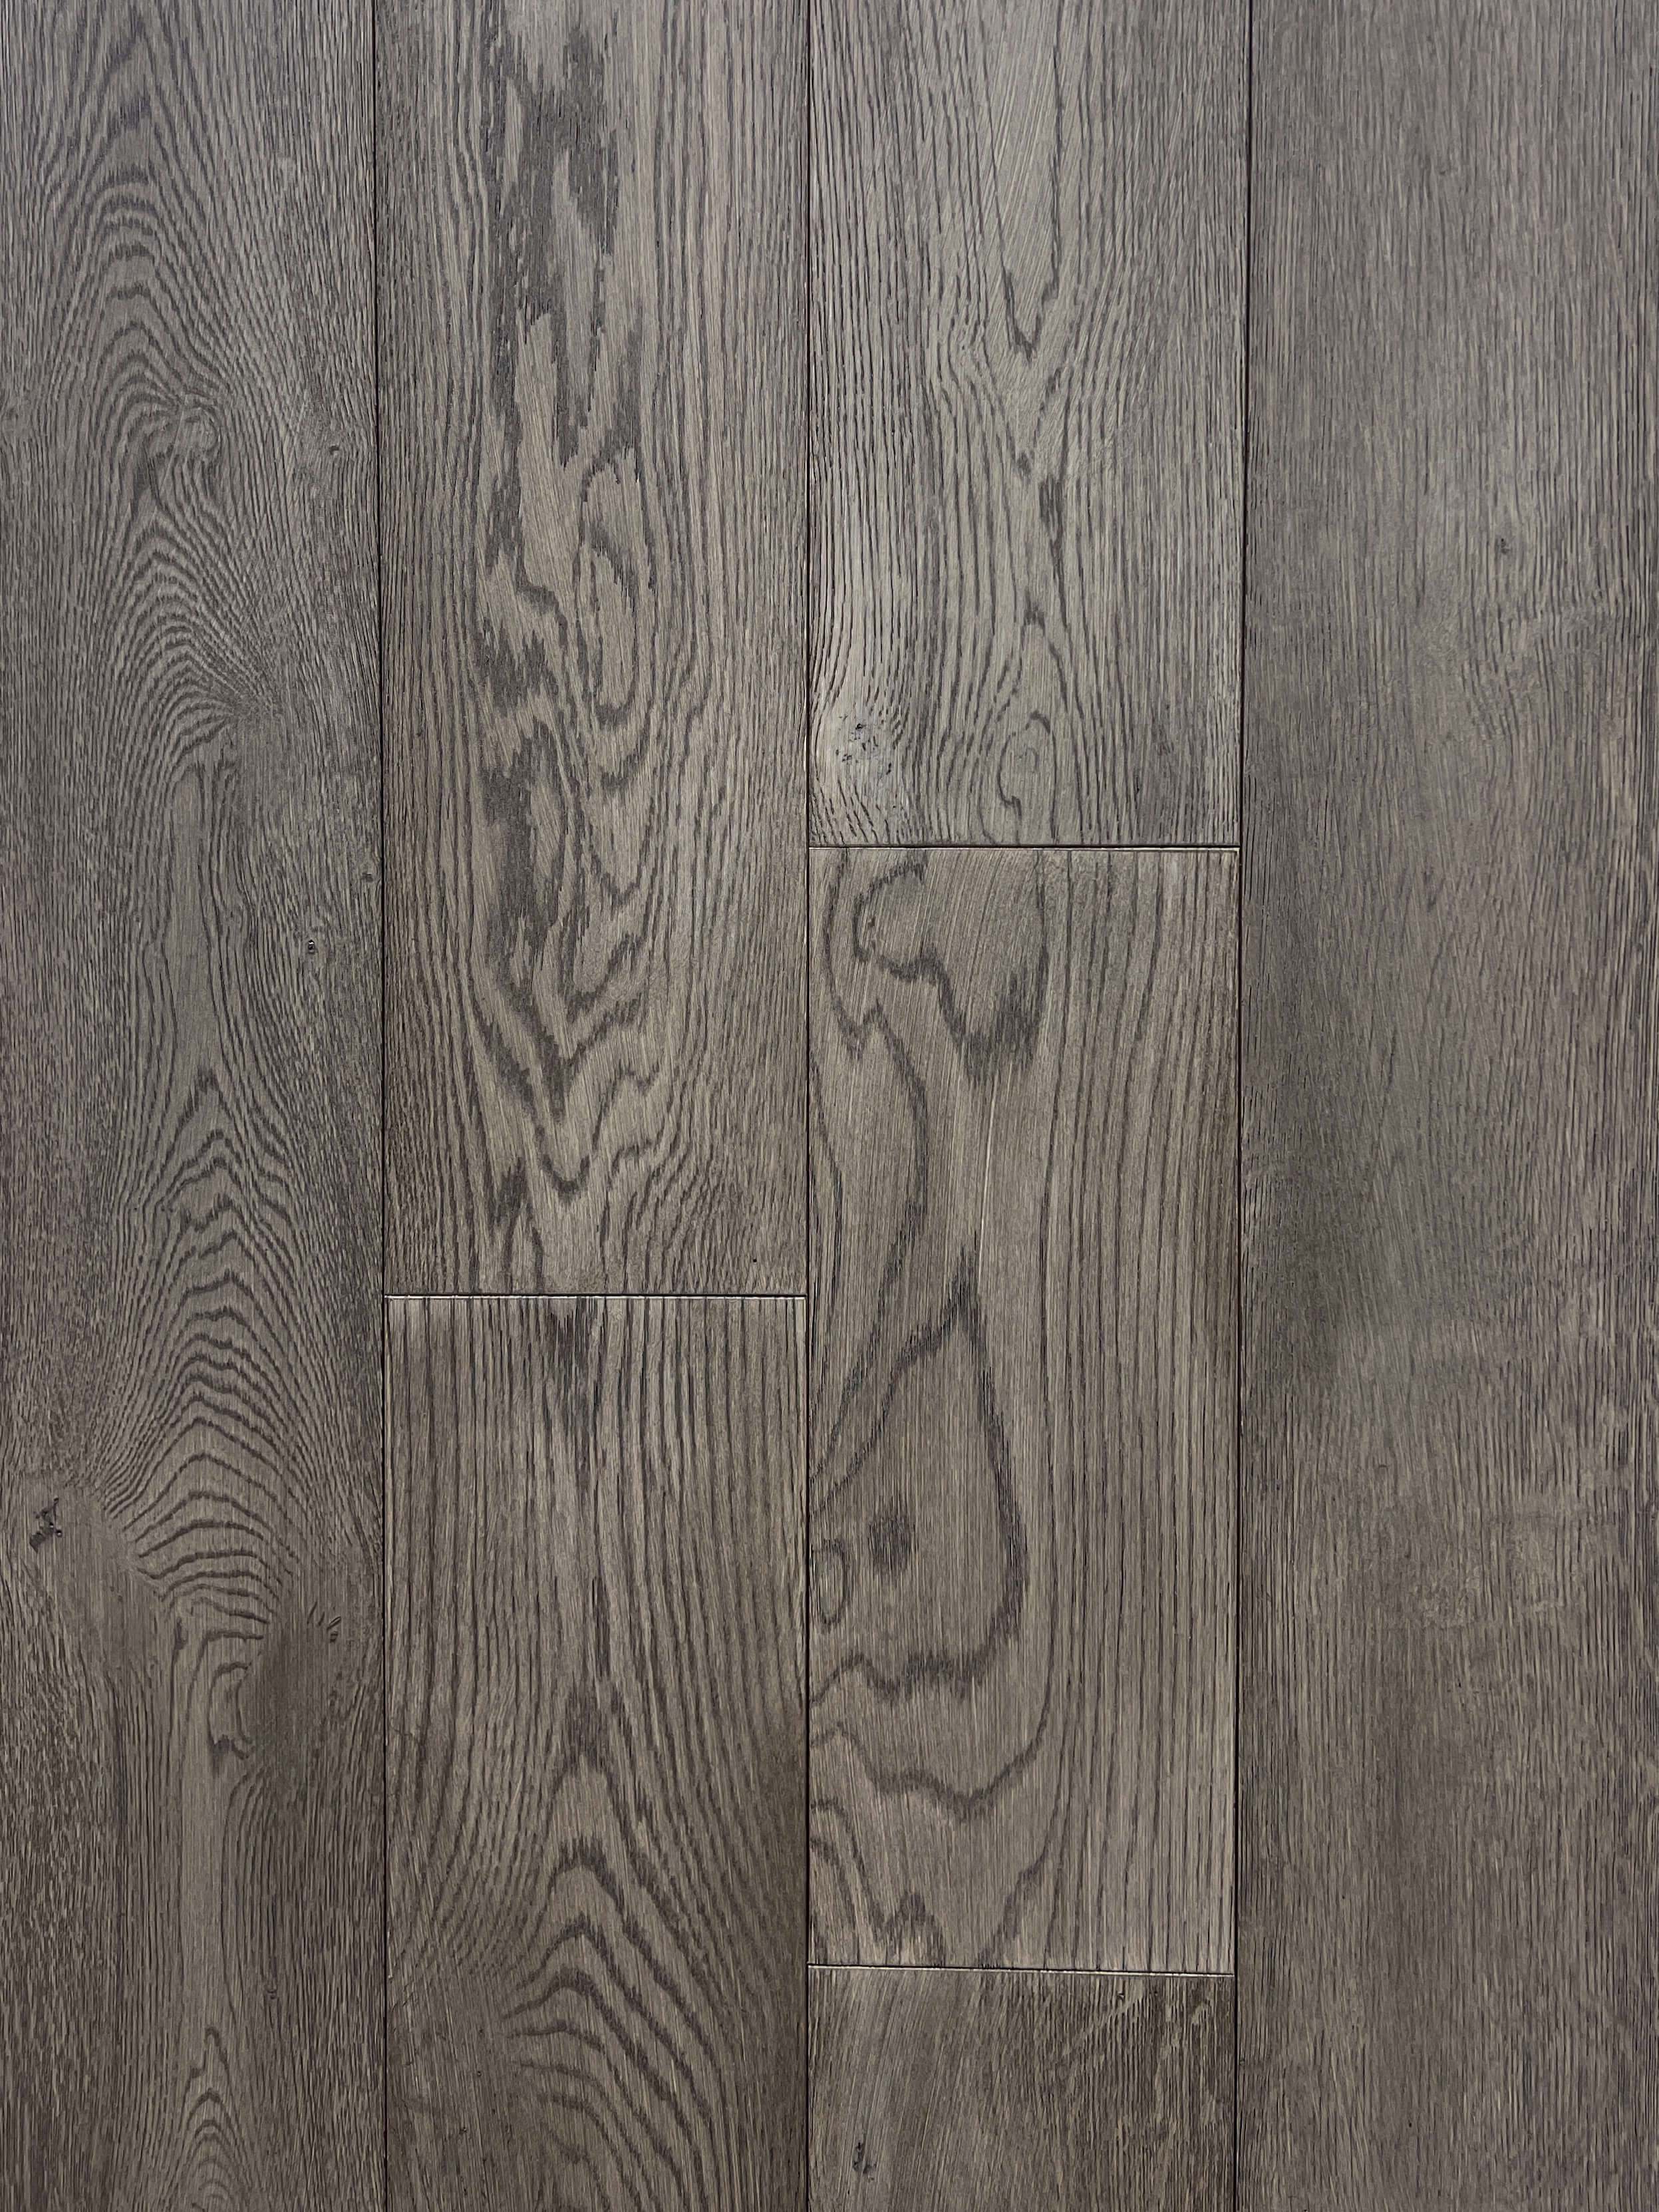 Floorest - 7 1/2 x 3/4 - Oak Pebble Stone (3MM Top) - Engineered Hardwood - 27.20 SF/b